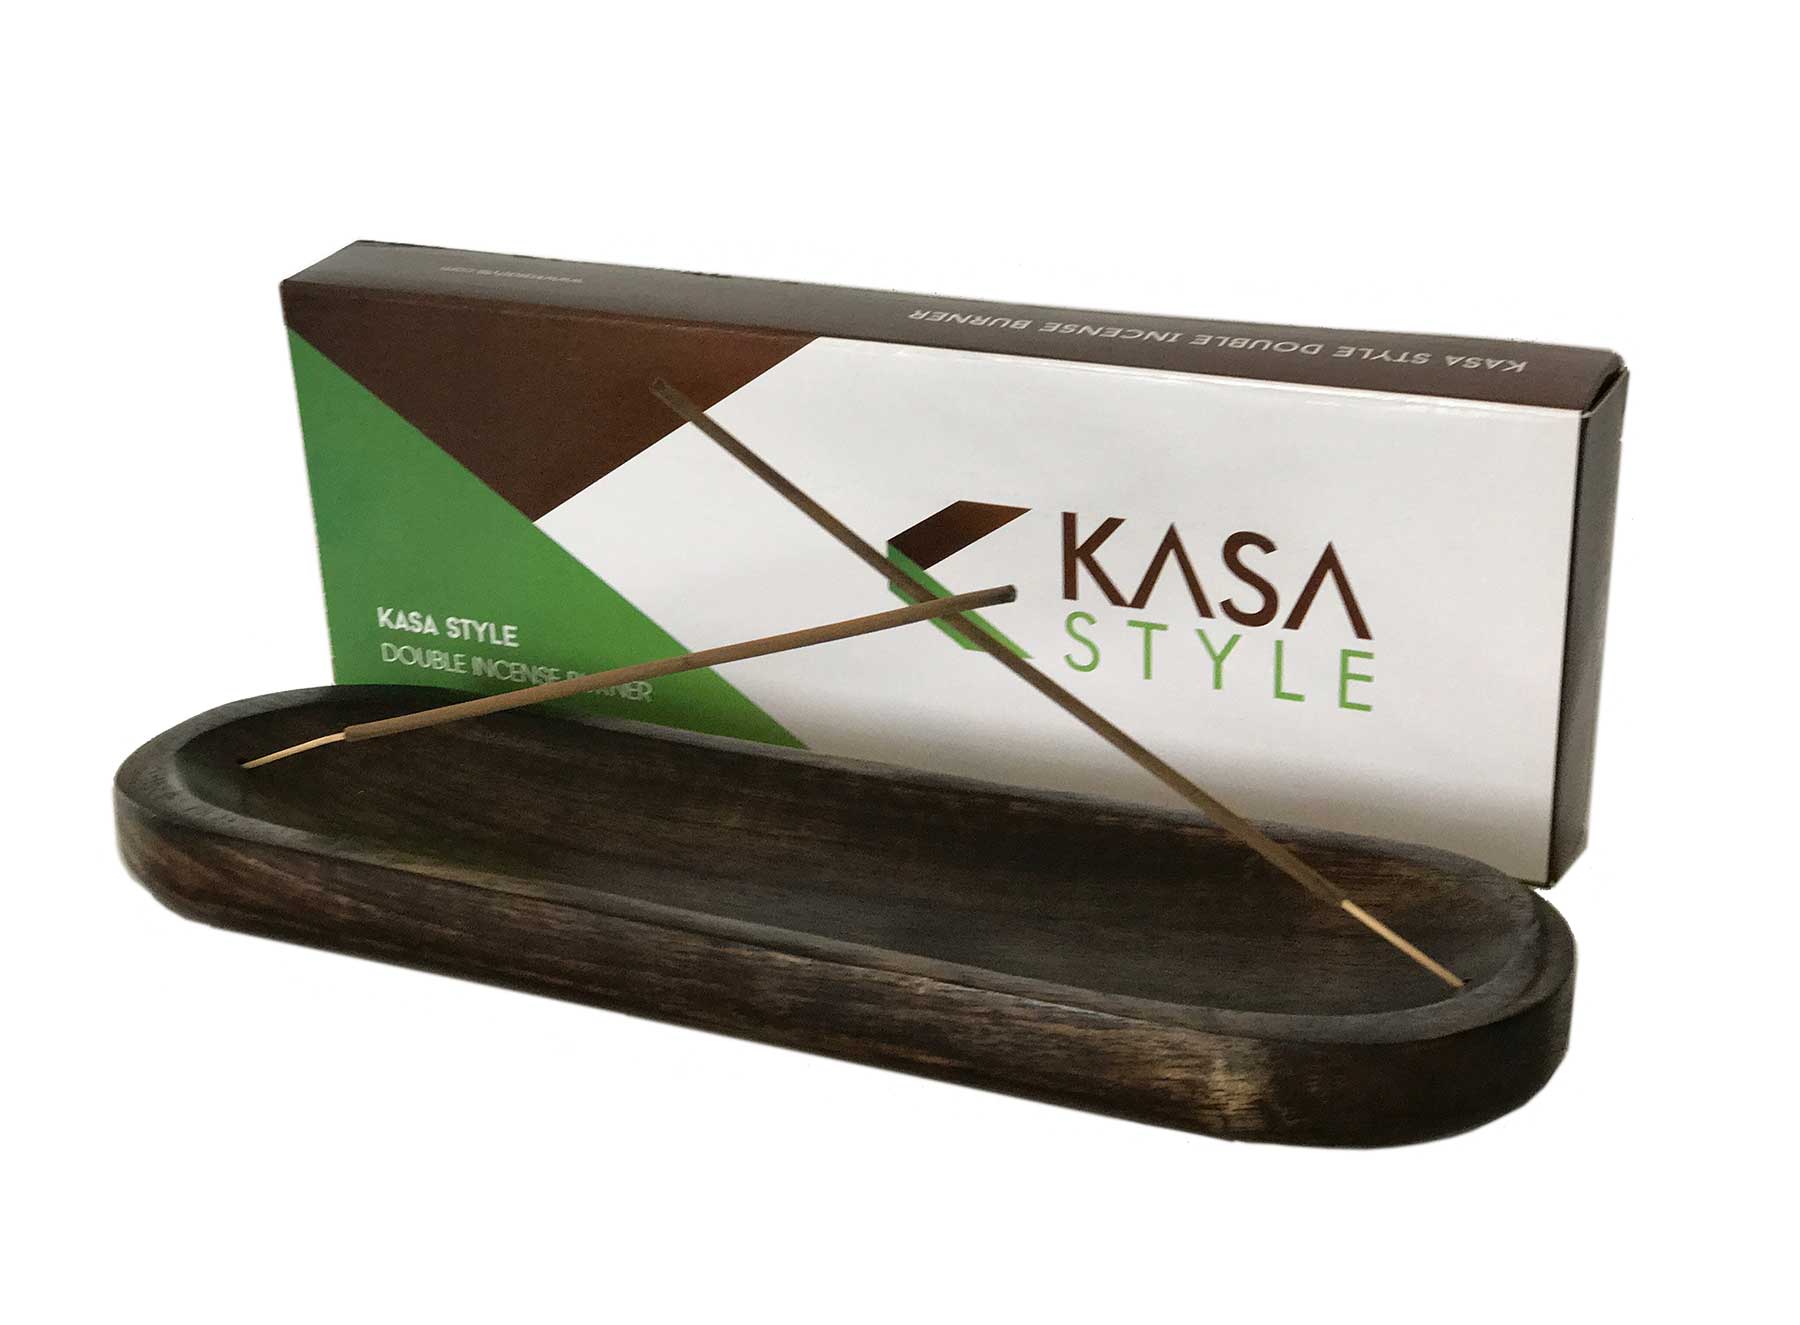 Kasa Style Double Incense Burner 100gr Ancient Sensations Premium Incense Sticks